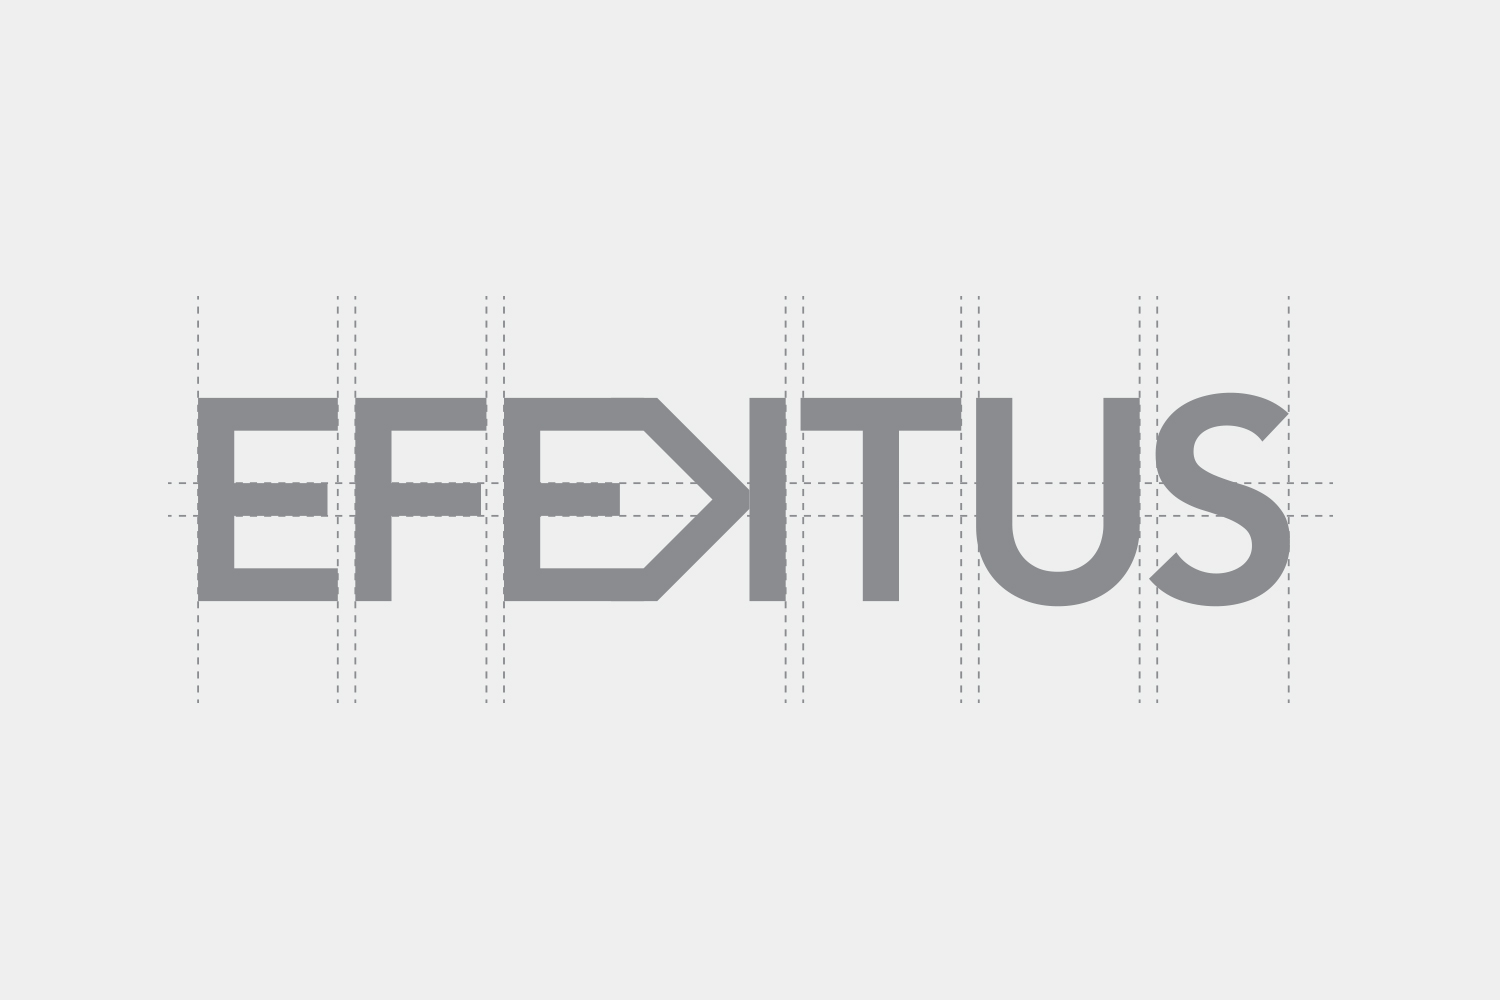 oblikovanje logotipa Efektus 2